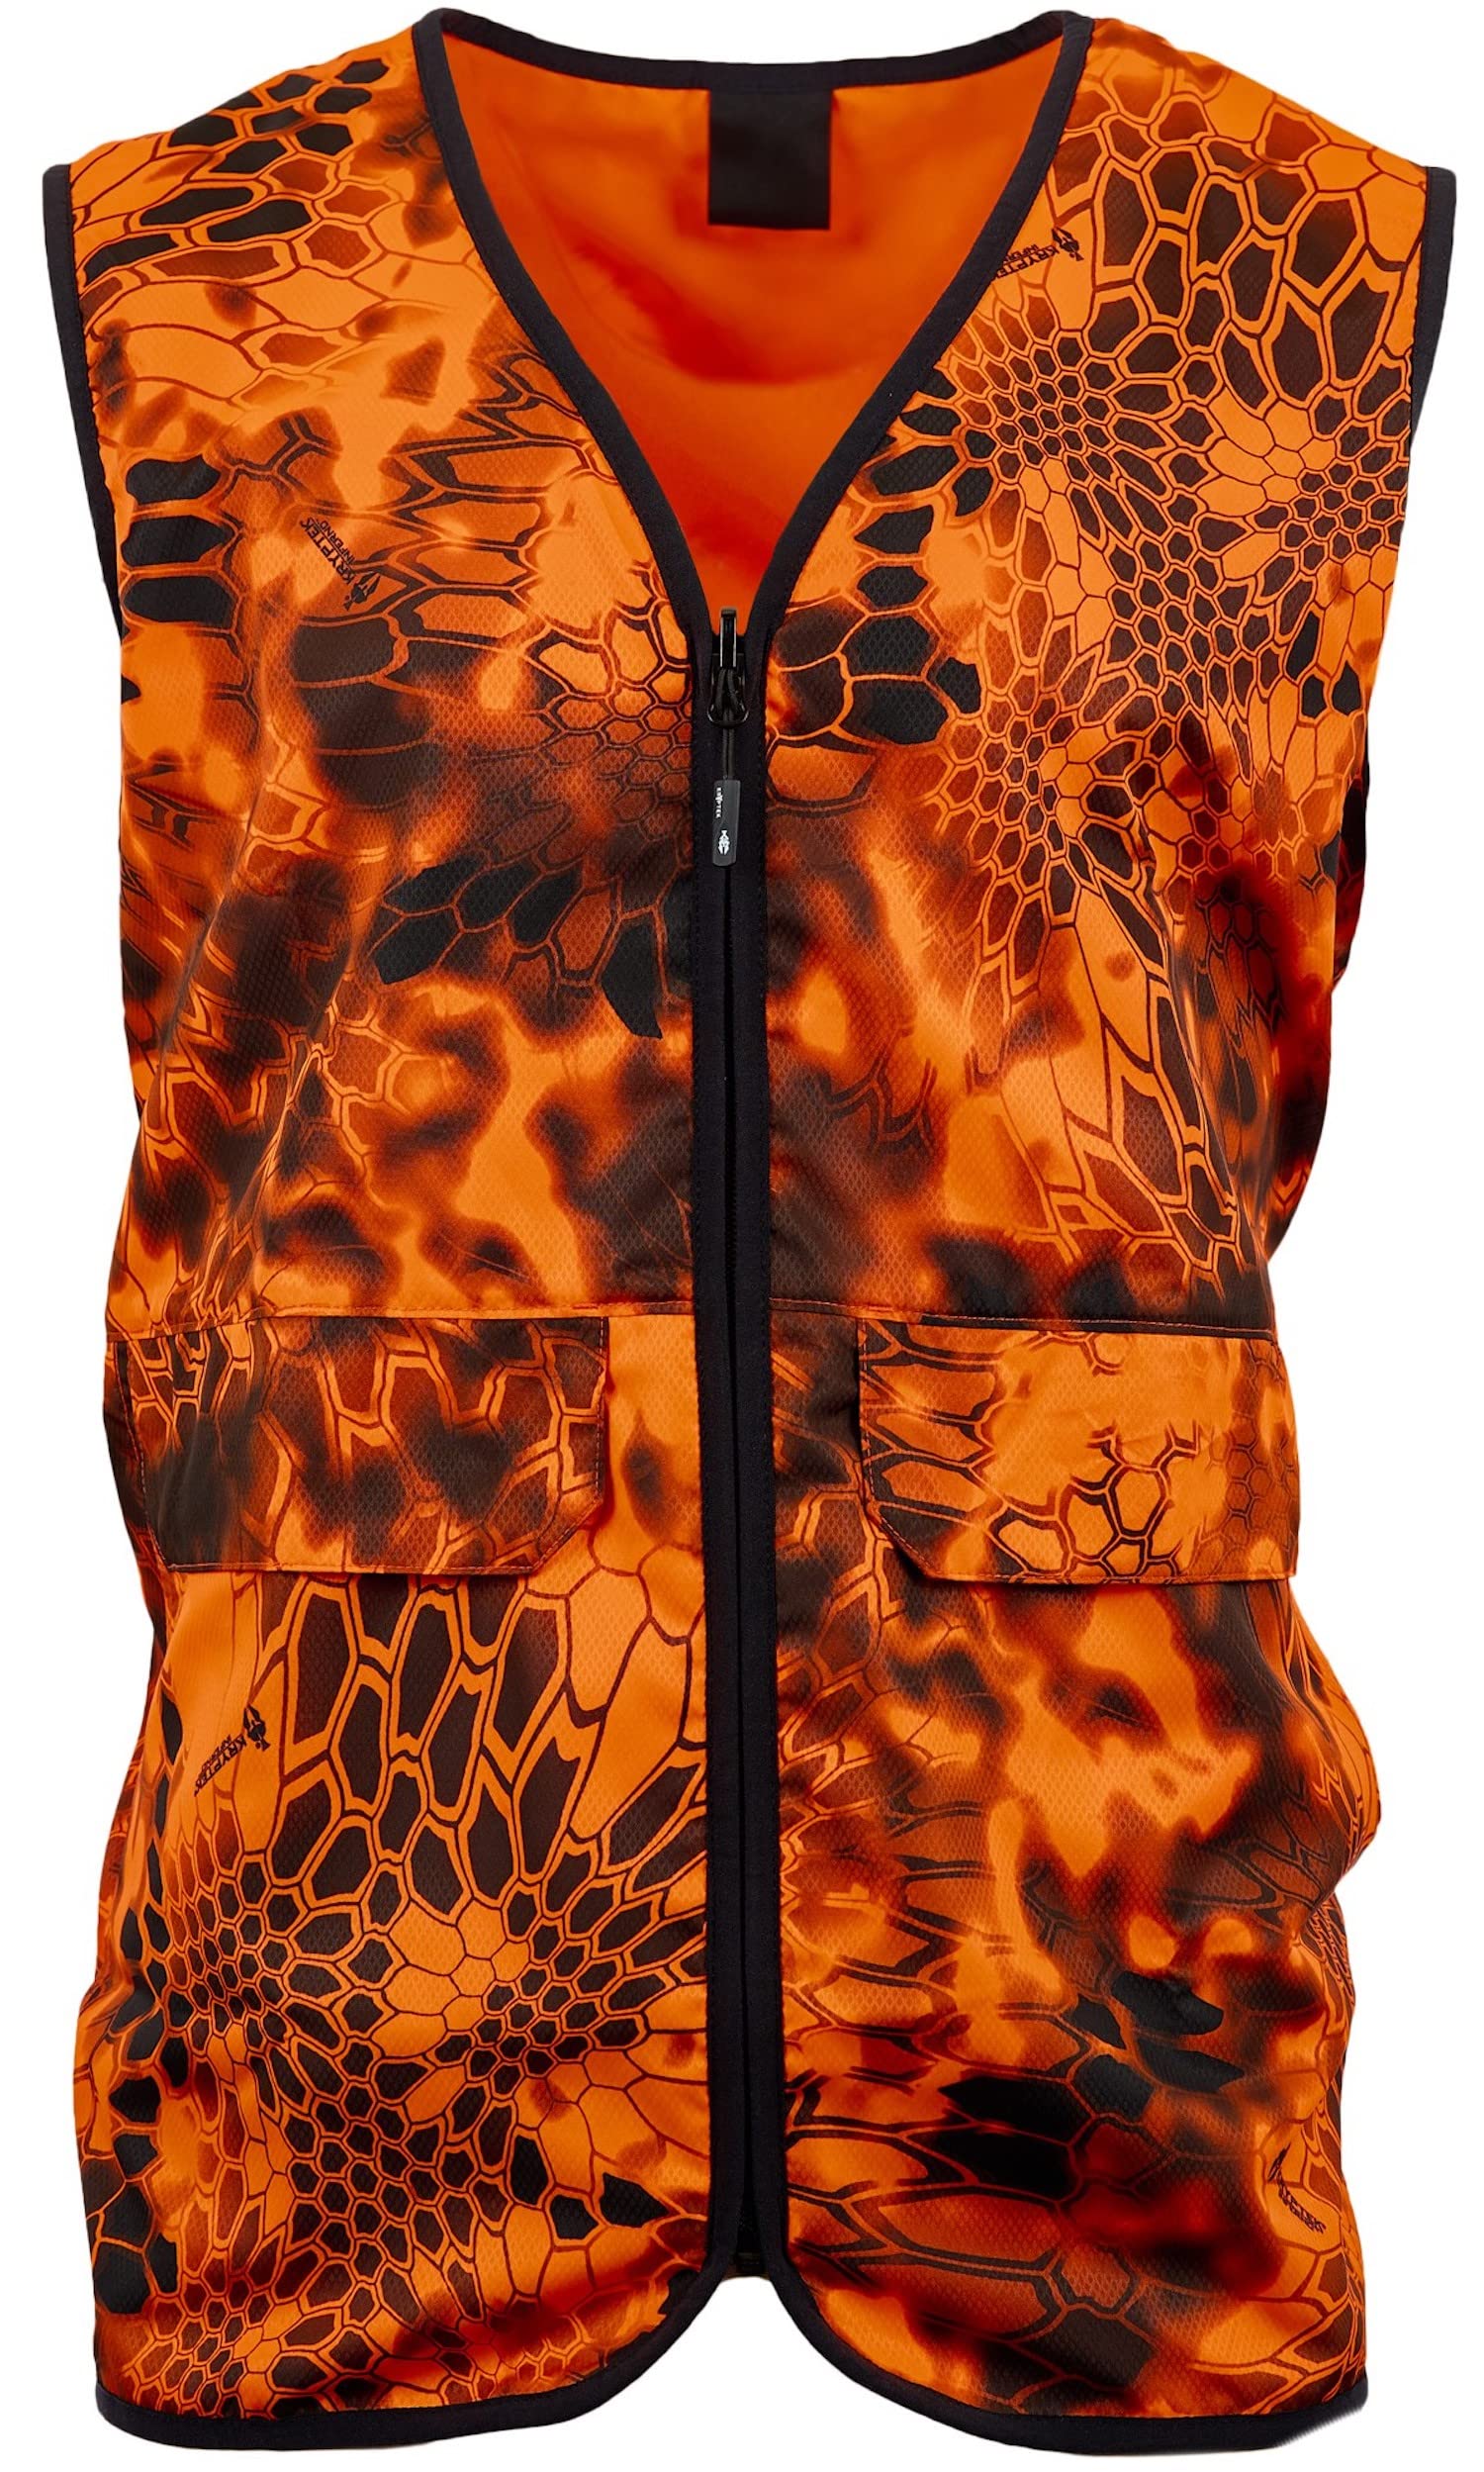 Kryptek Vesuvius Vest, High Visibility, Reversible Hunting Safety Vest